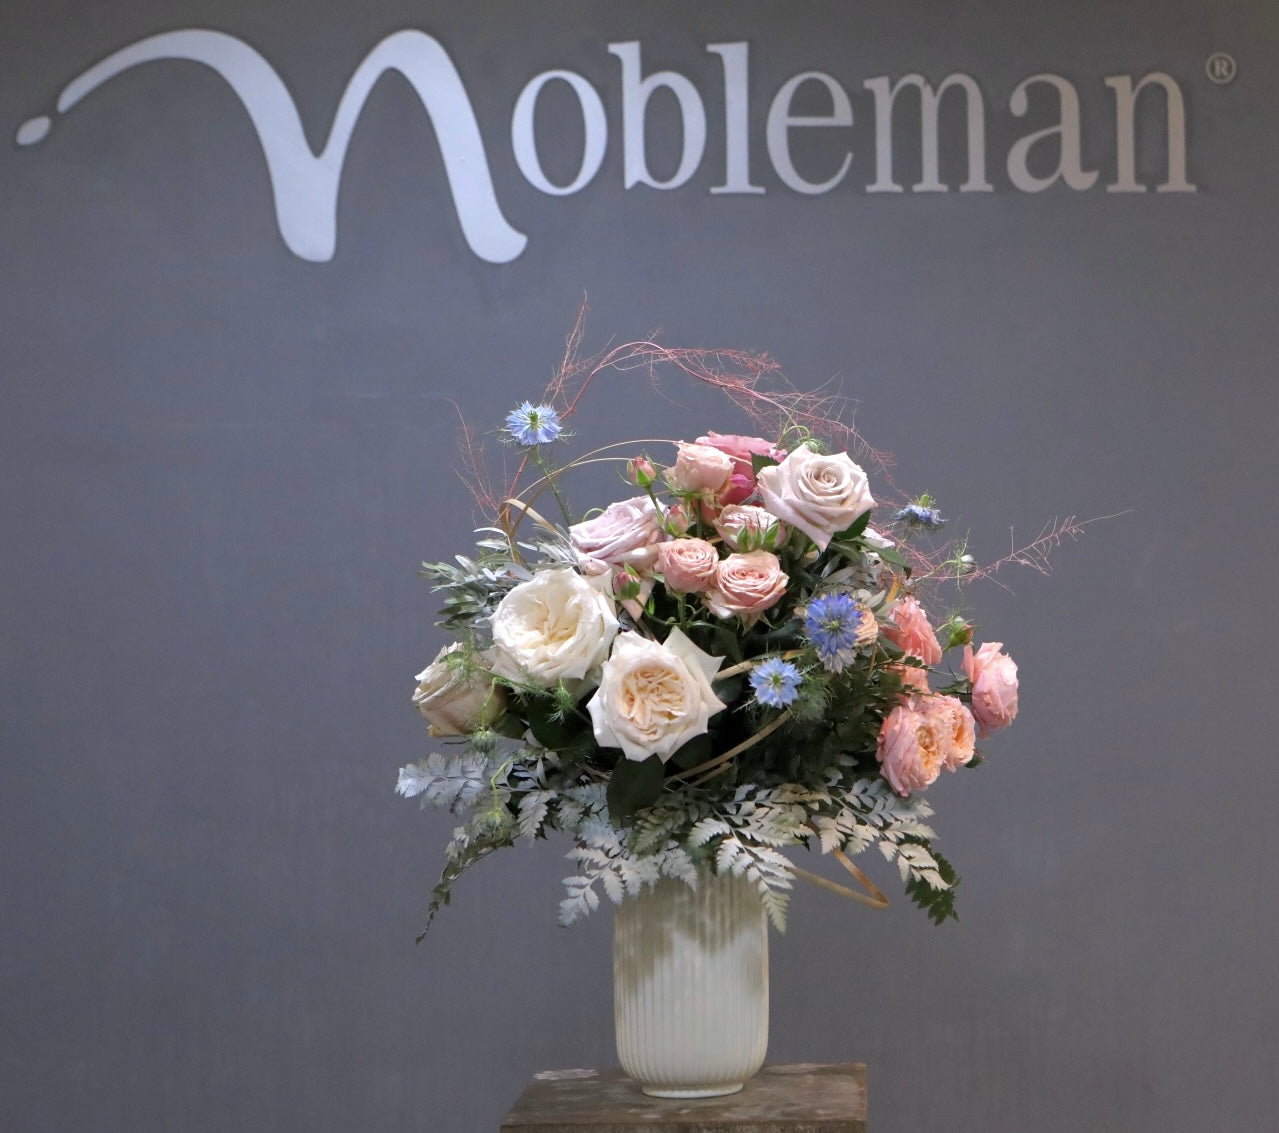 Nobleman School of Floral Design Workshop Bouquets Table Arrangements Wedding Events Roses Singapore